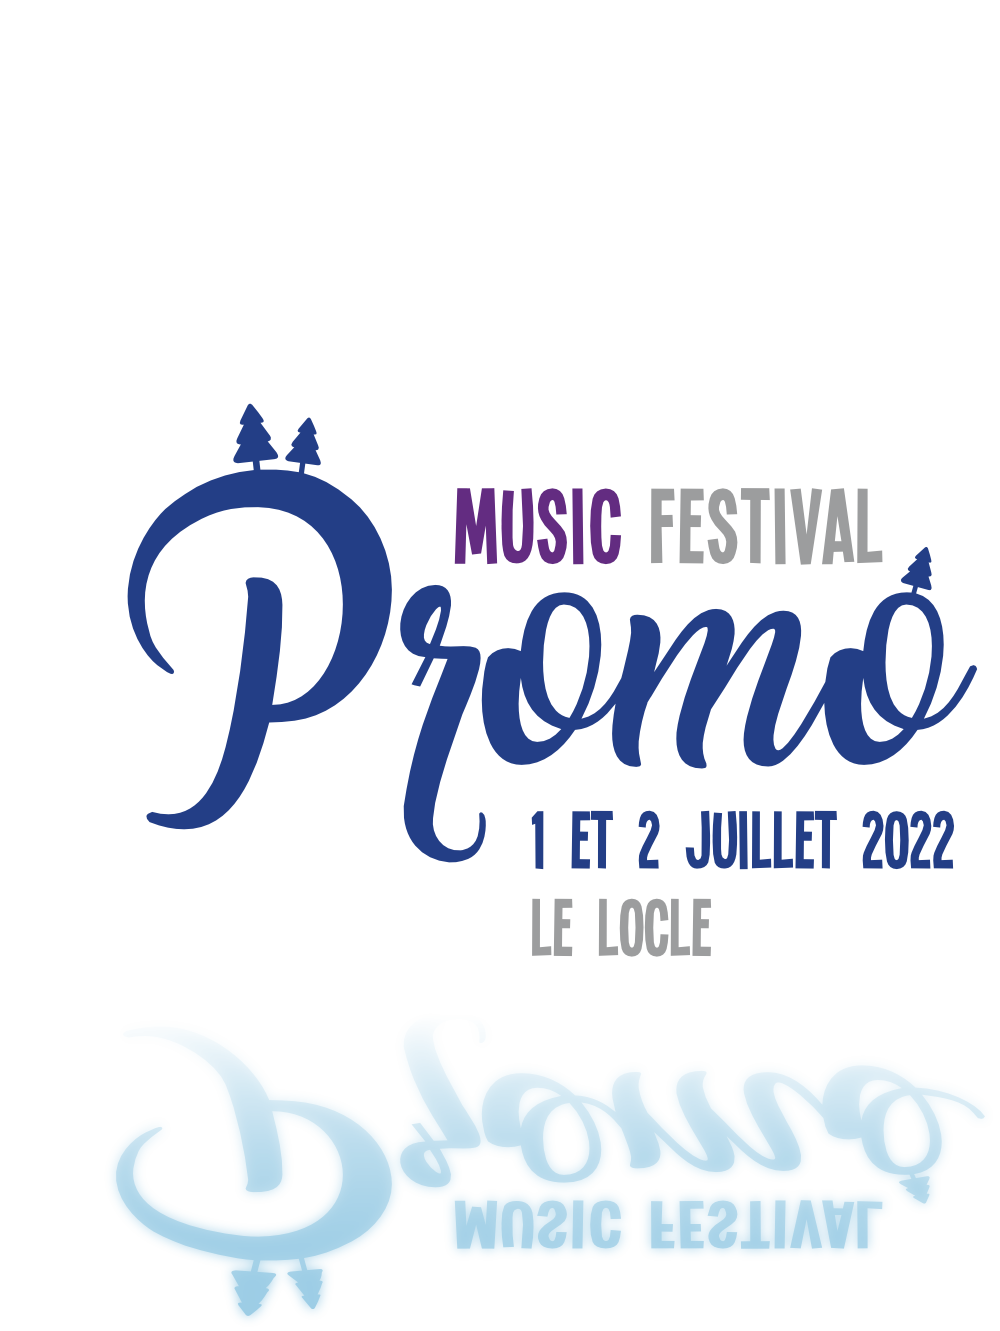 Music Festival Promo - 1er et 2 juillet 2022 - Le Locle